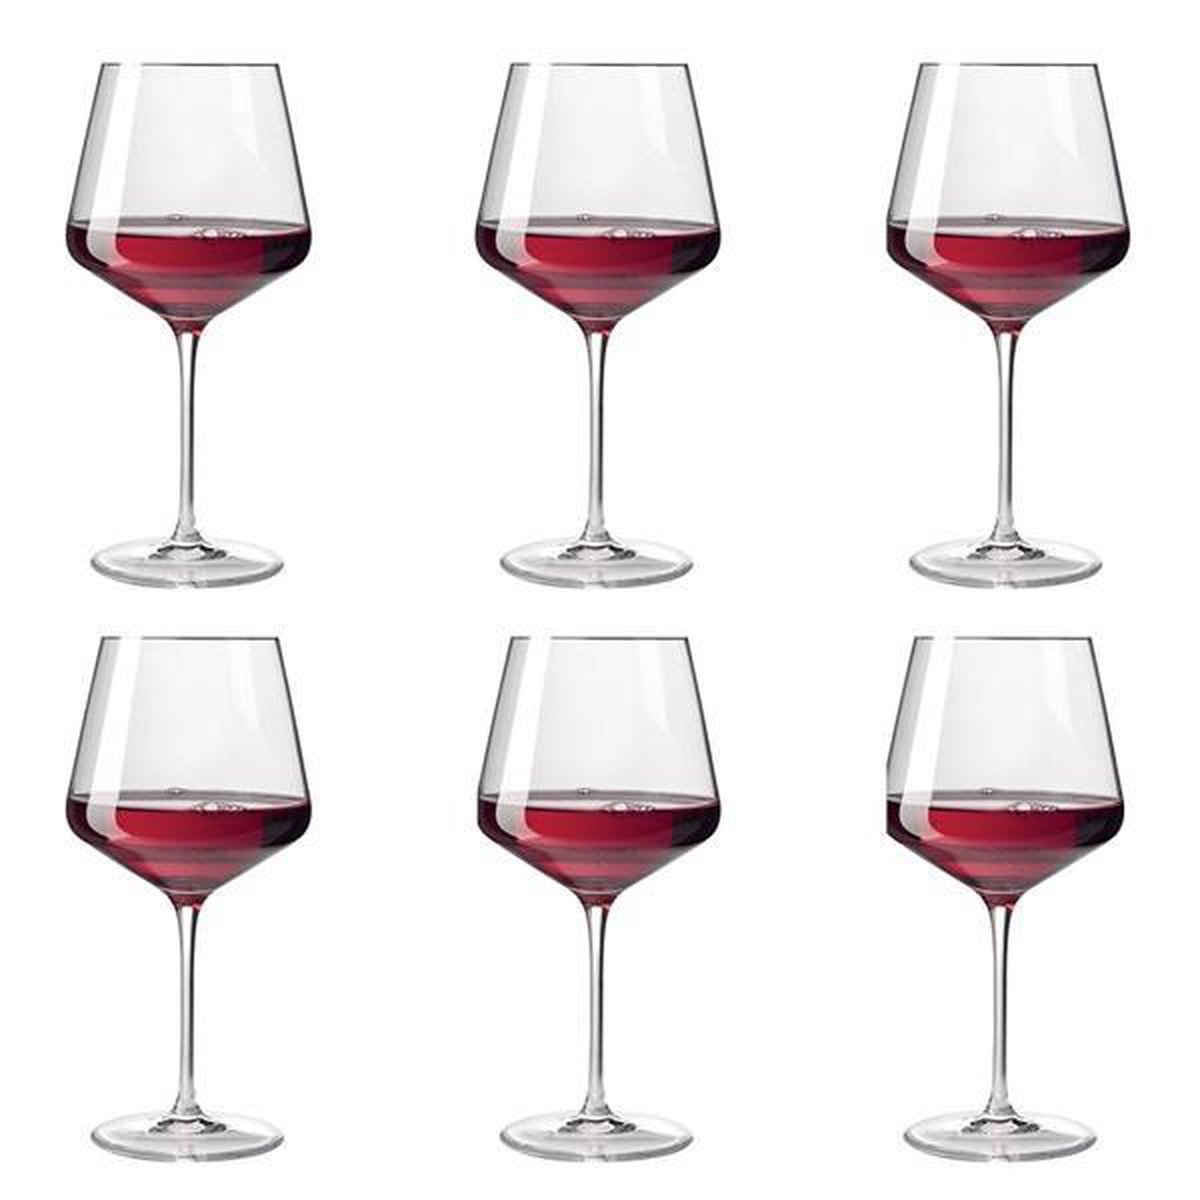 Leonardo Bourgogne rode wijnglas Puccini set van 6